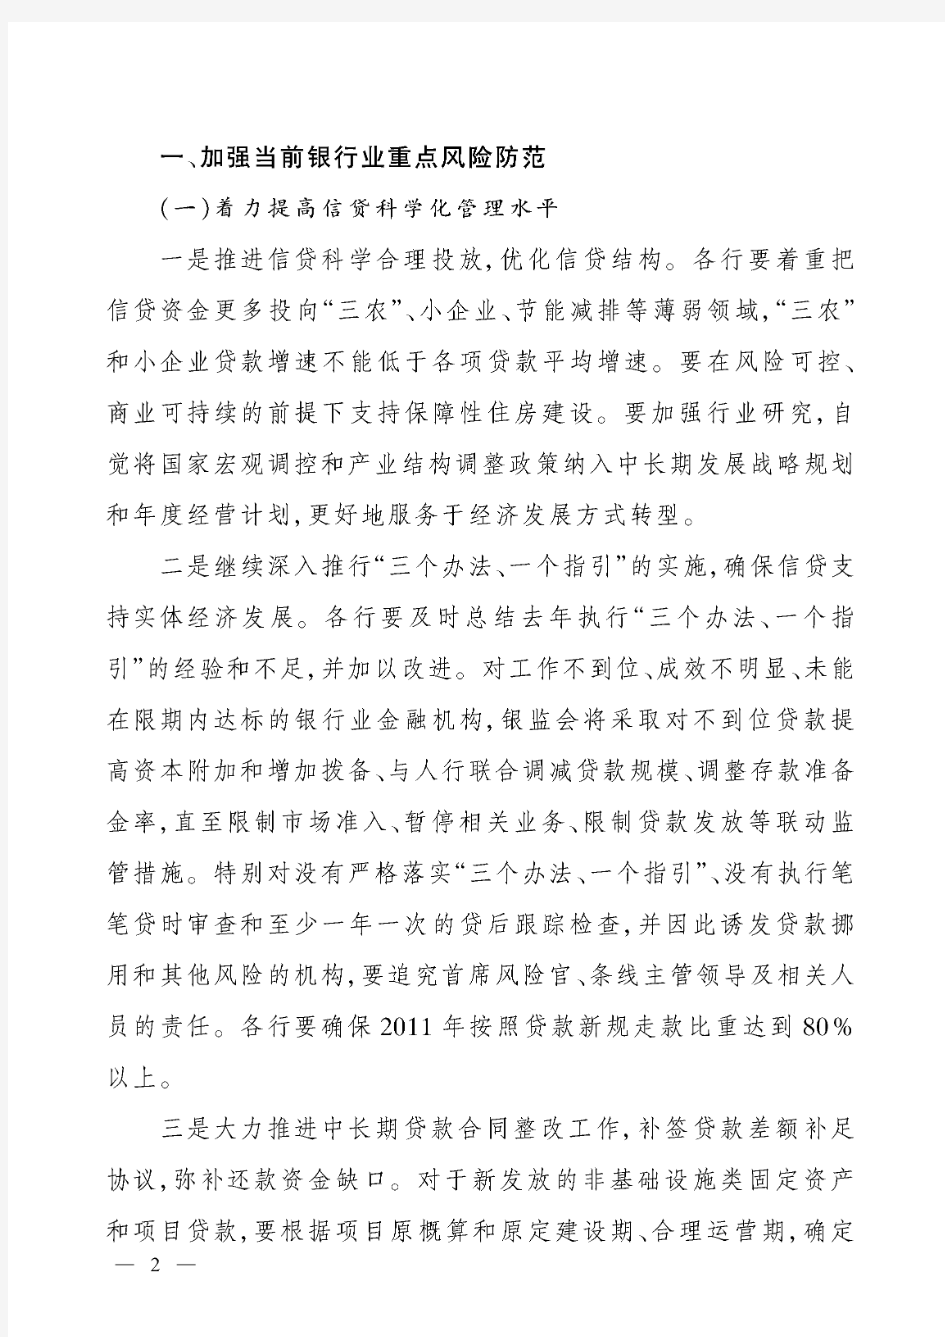 银监发【2011】14号中国银监会关于进一步推进改革发展加强风险防范的通知